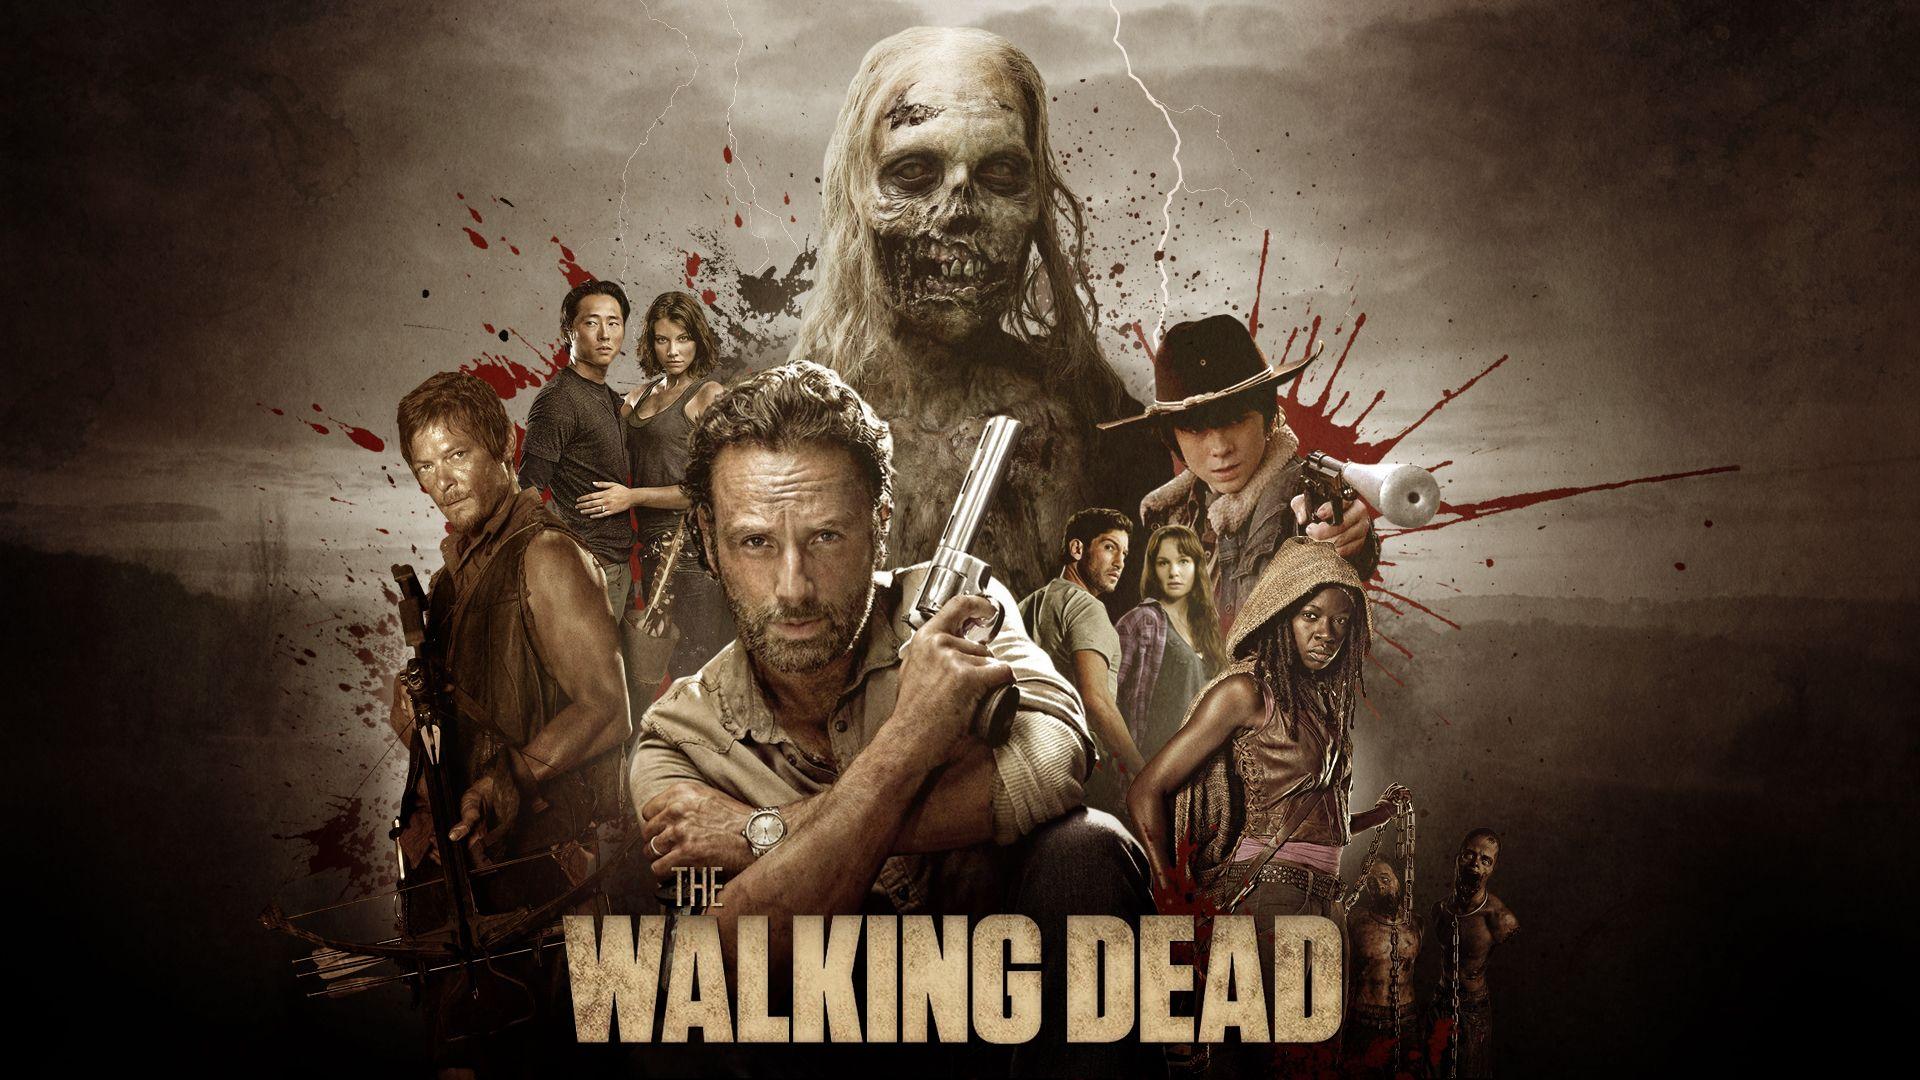 Walking Dead Wallpapers Top Free Walking Dead Backgrounds Wallpaperaccess